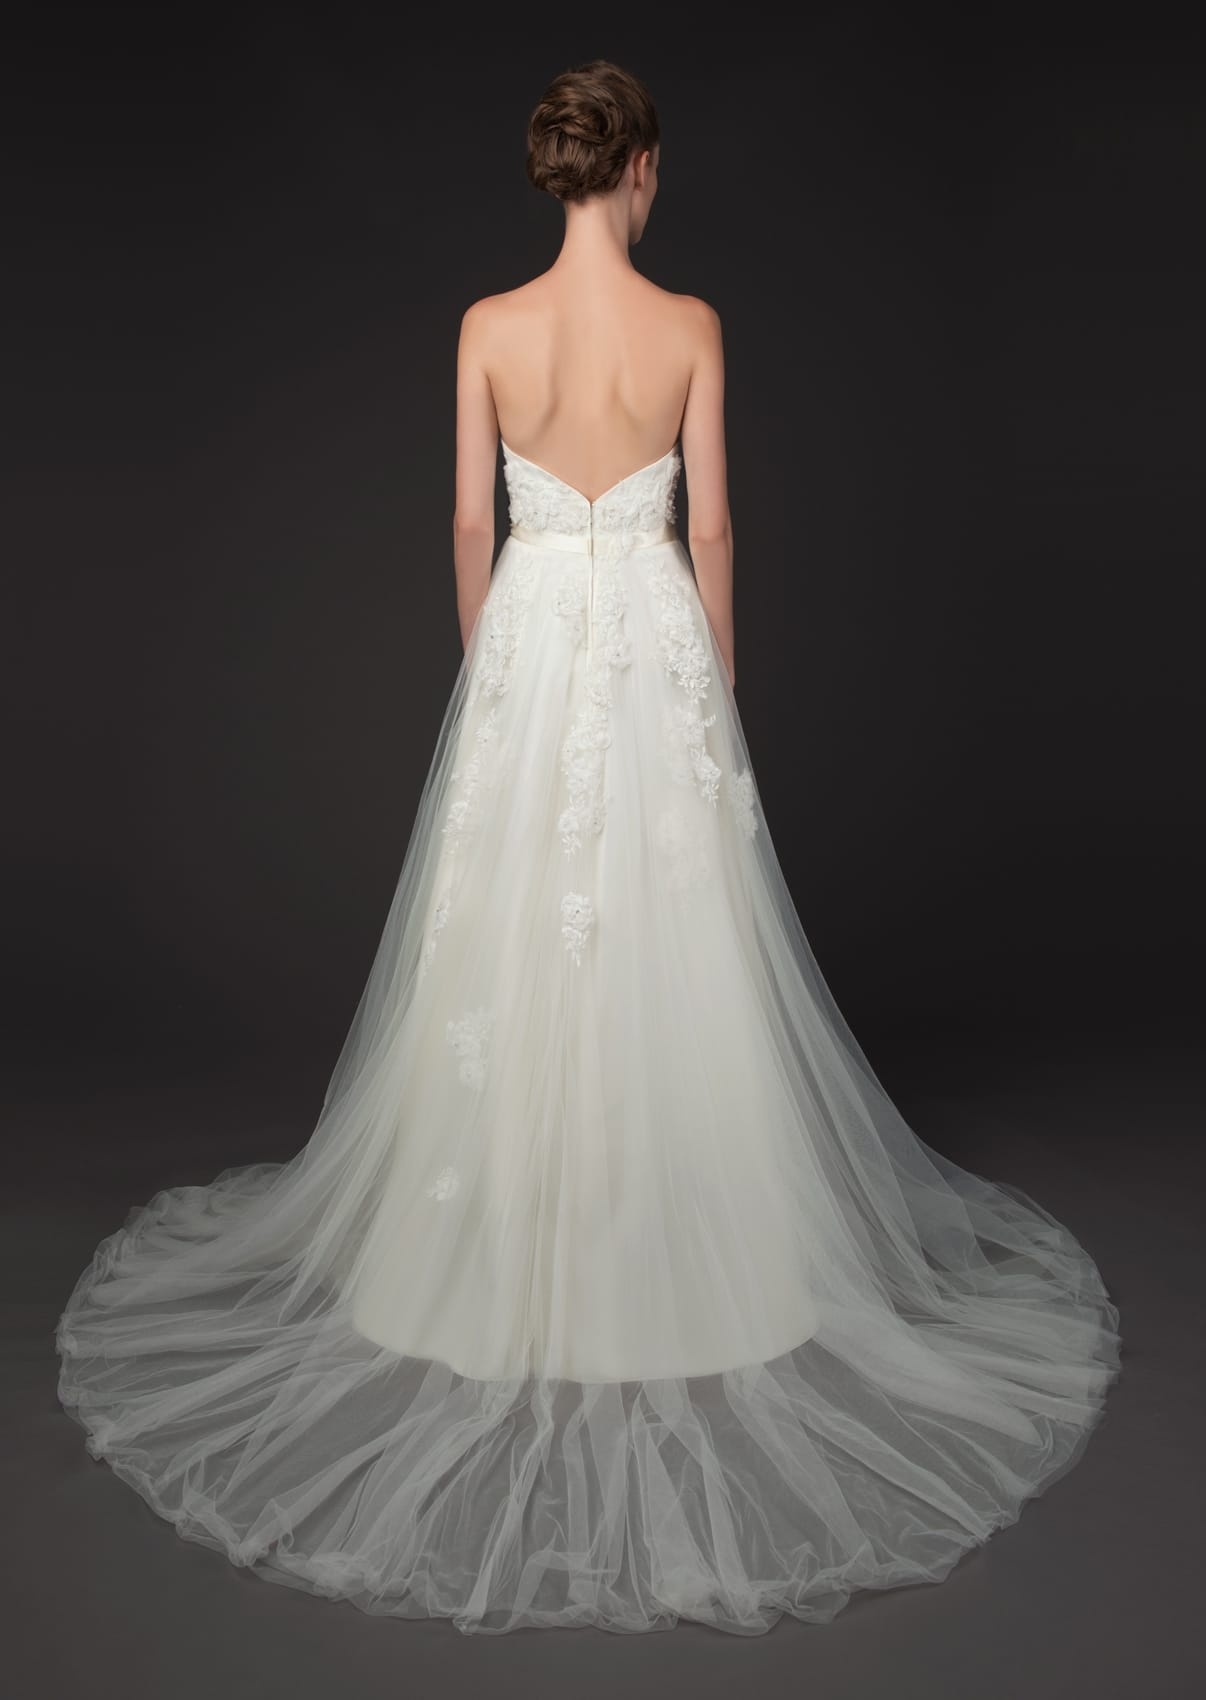 Custom Designer Wedding Dress Annette-8425